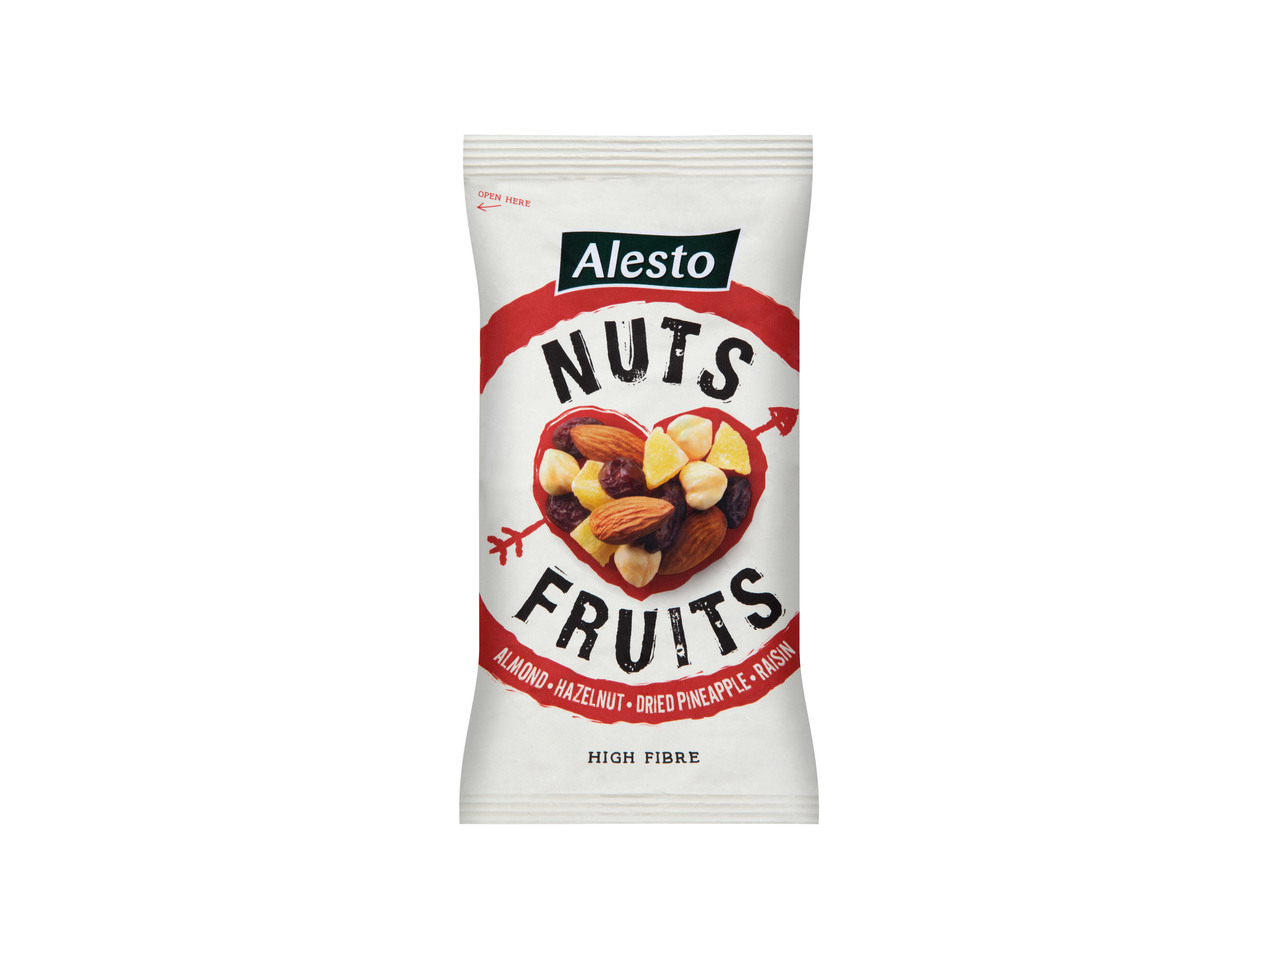 NUTS & BERRIES / NUTS EXOTIC